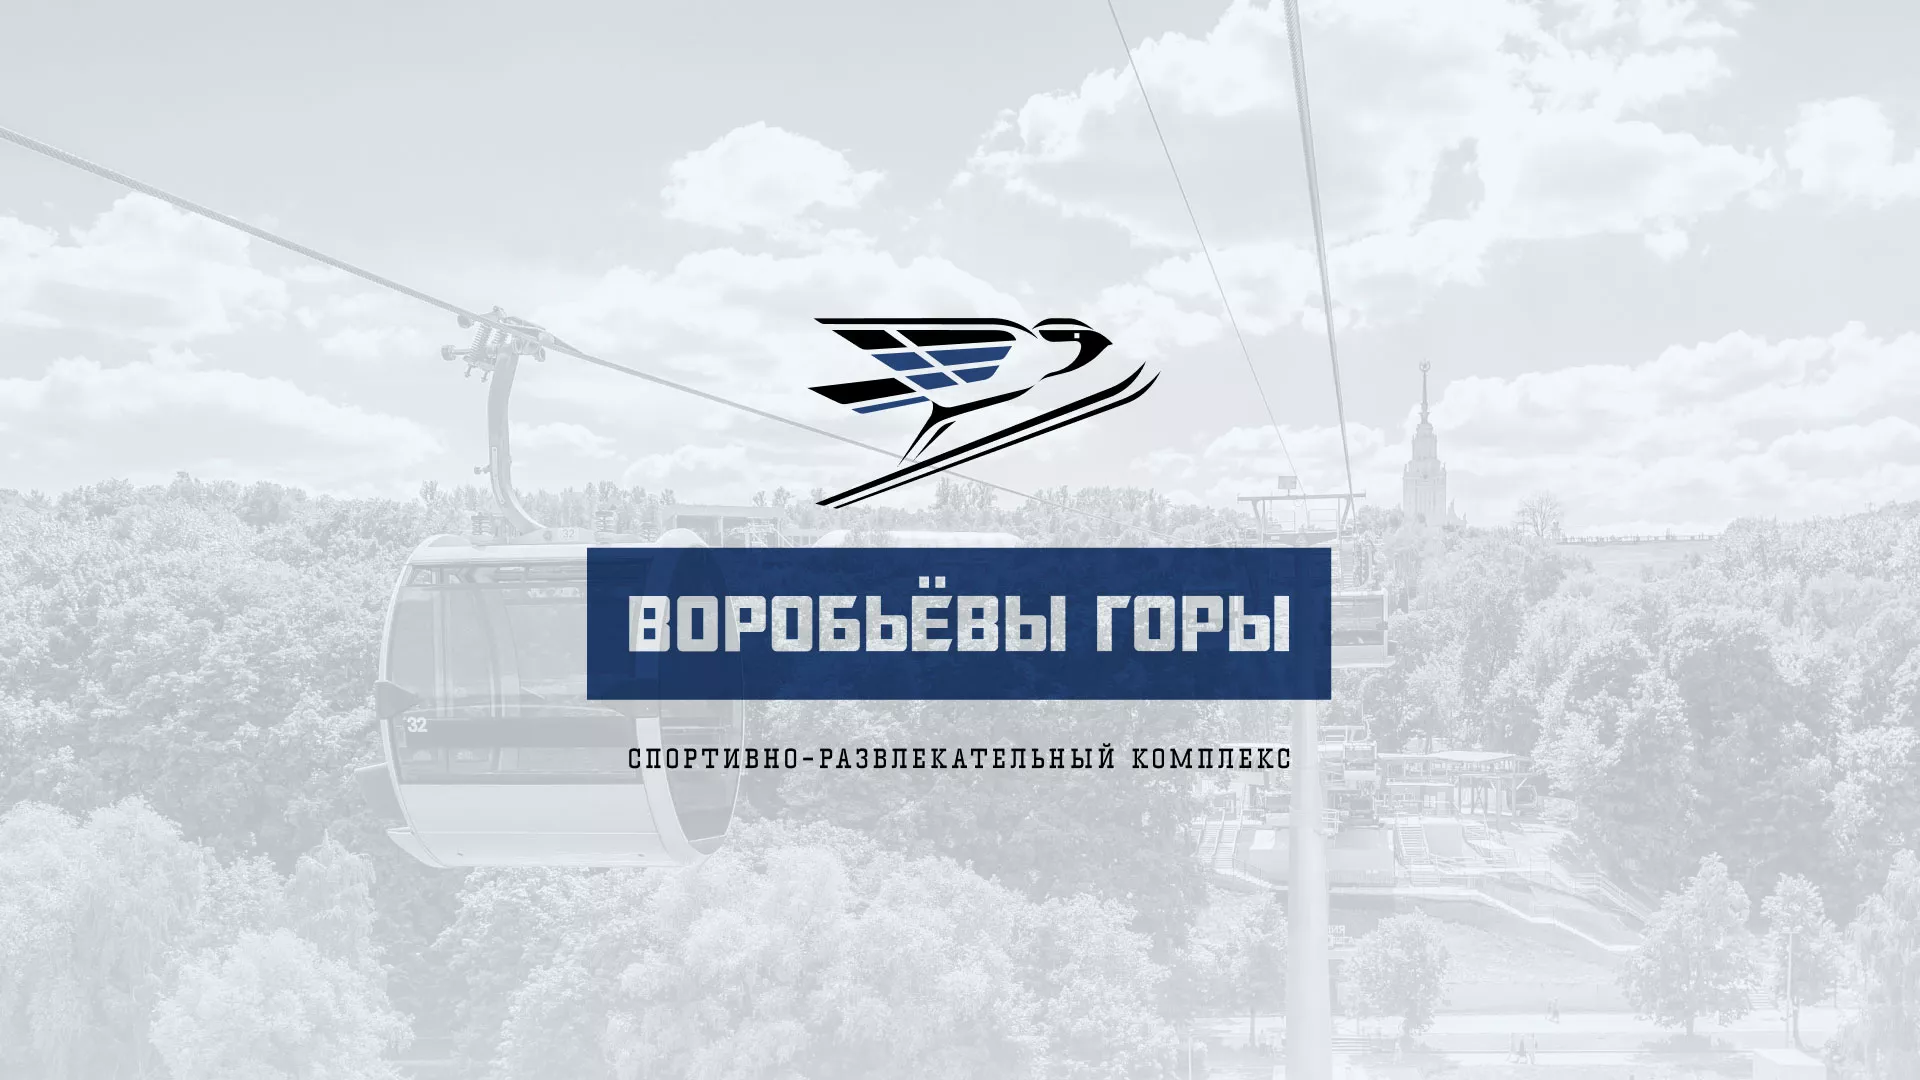 Разработка сайта в Череповце для спортивно-развлекательного комплекса «Воробьёвы горы»